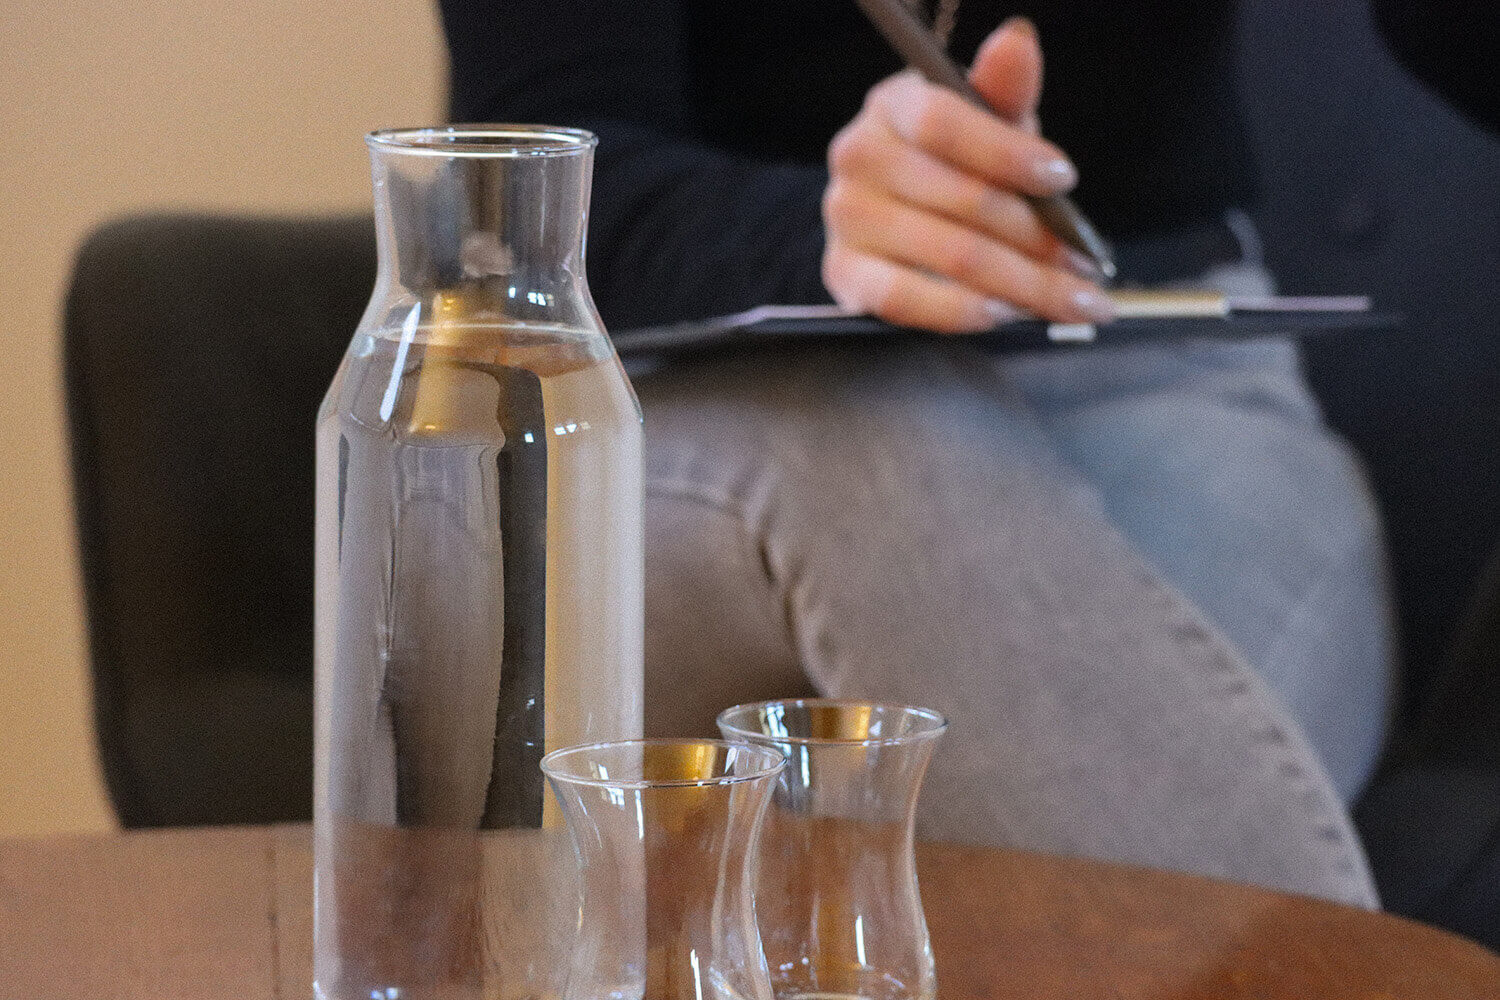 Tisch mit Wasserflasche, Gläsern und unscharfer Person.